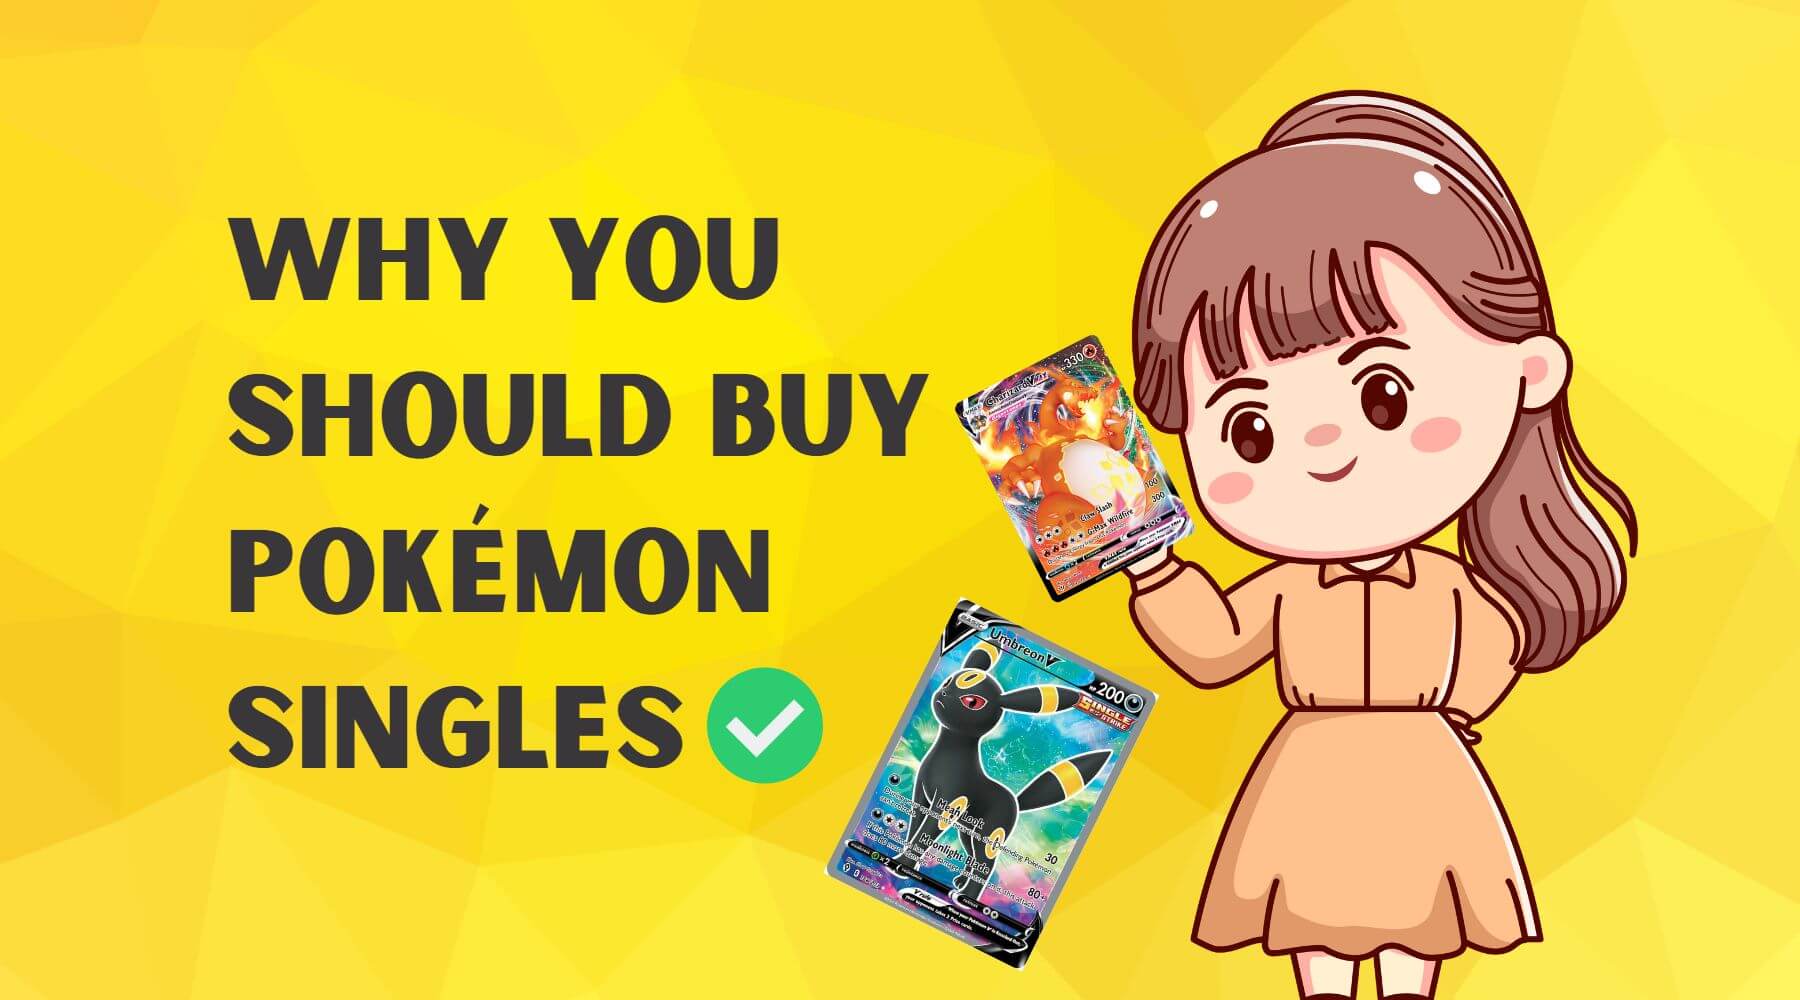 Why you should buy Pokémon Singles - Should You buy singles Pokémon cards?